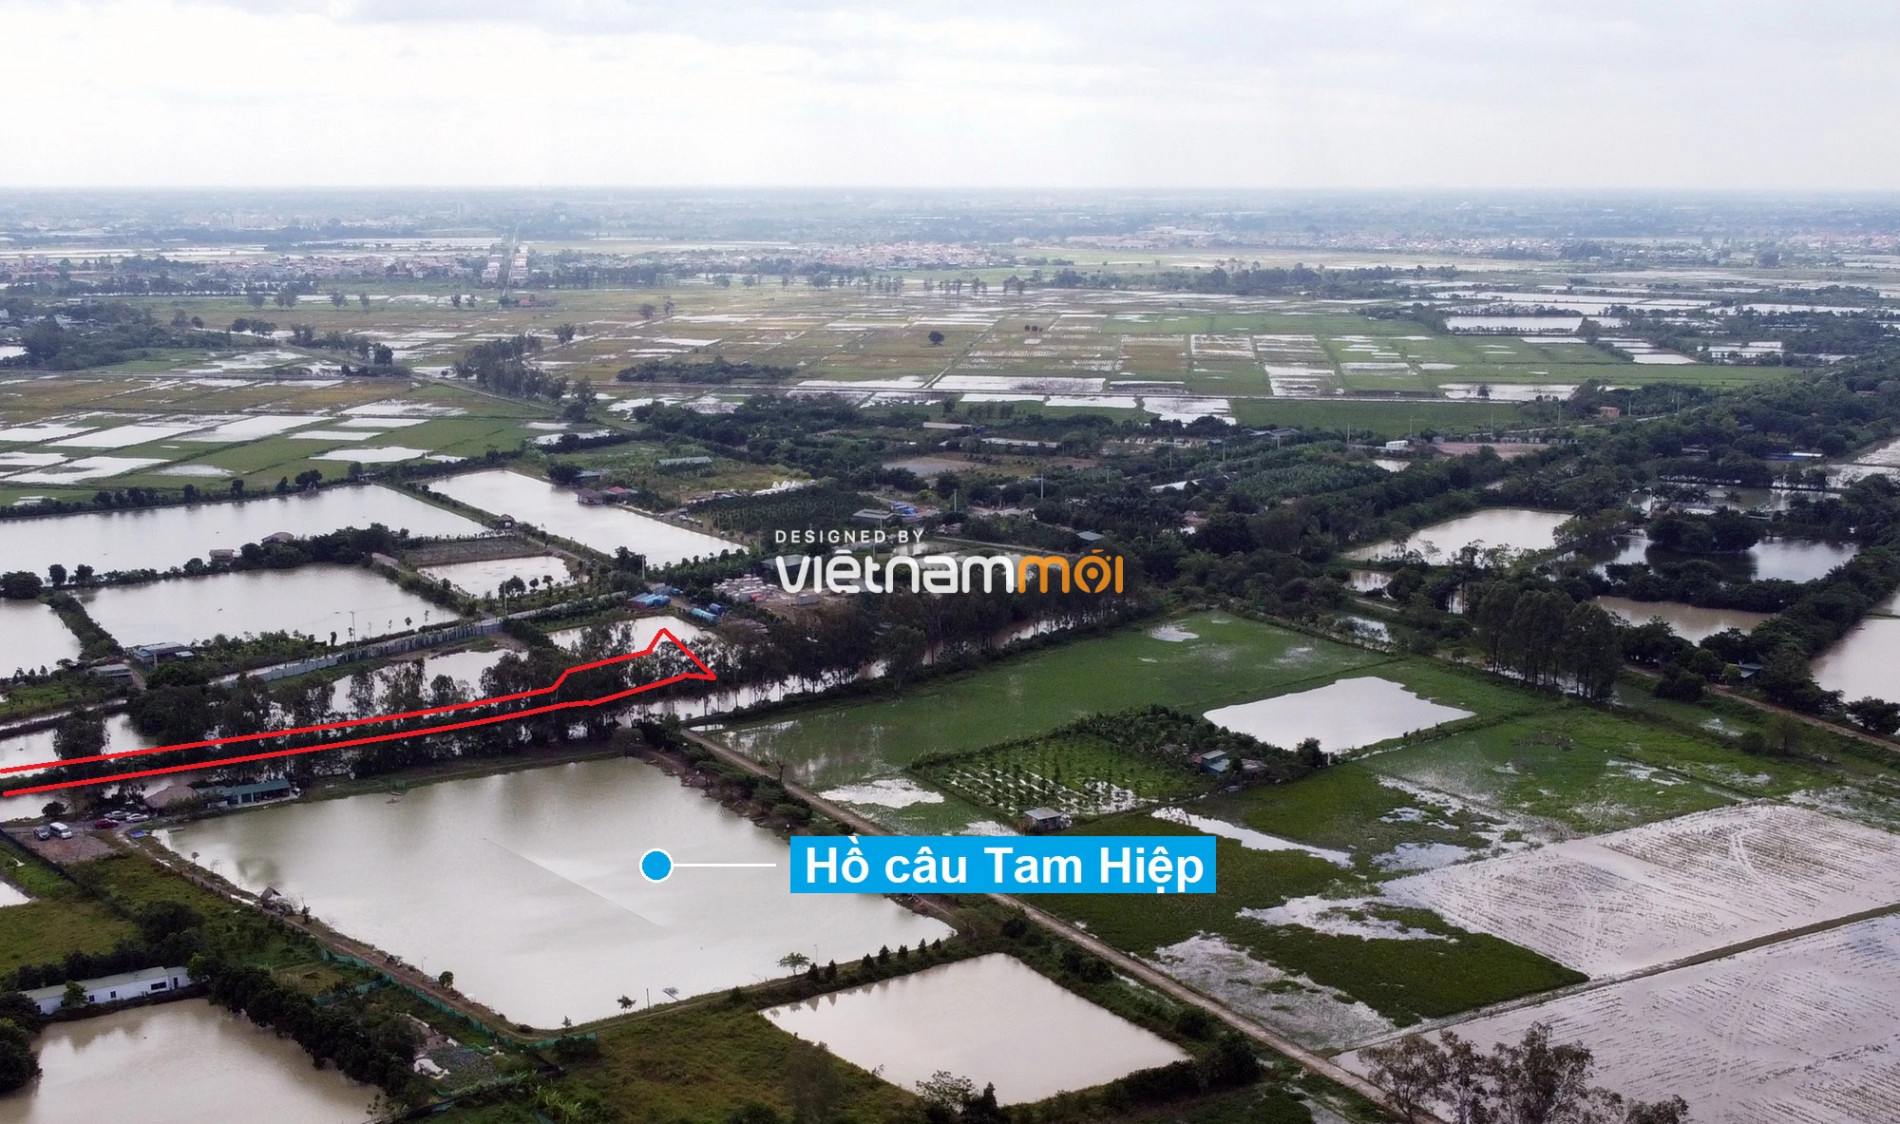 Những khu đất sắp thu hồi để mở đường ở xã Tả Thanh Oai, Thanh Trì, Hà Nội (phần 4) - Ảnh 14.